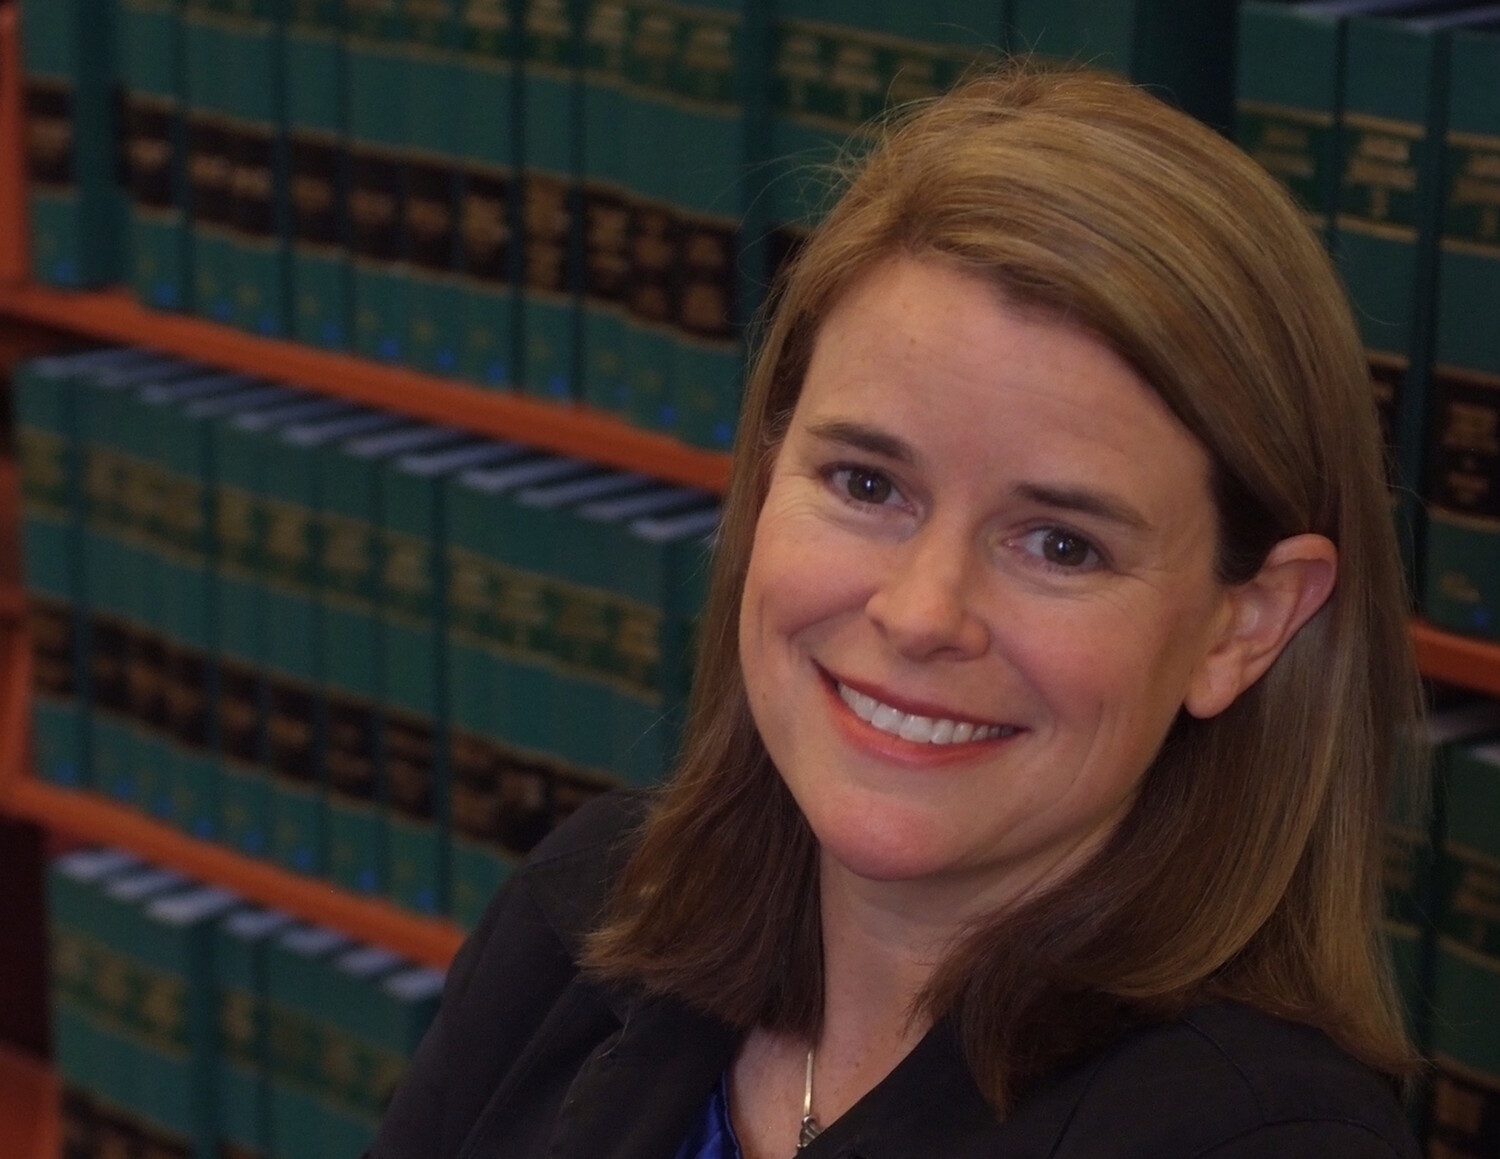 Alumni Q & A: Johanna Bond ’96, Incoming Dean of Rutgers Law School